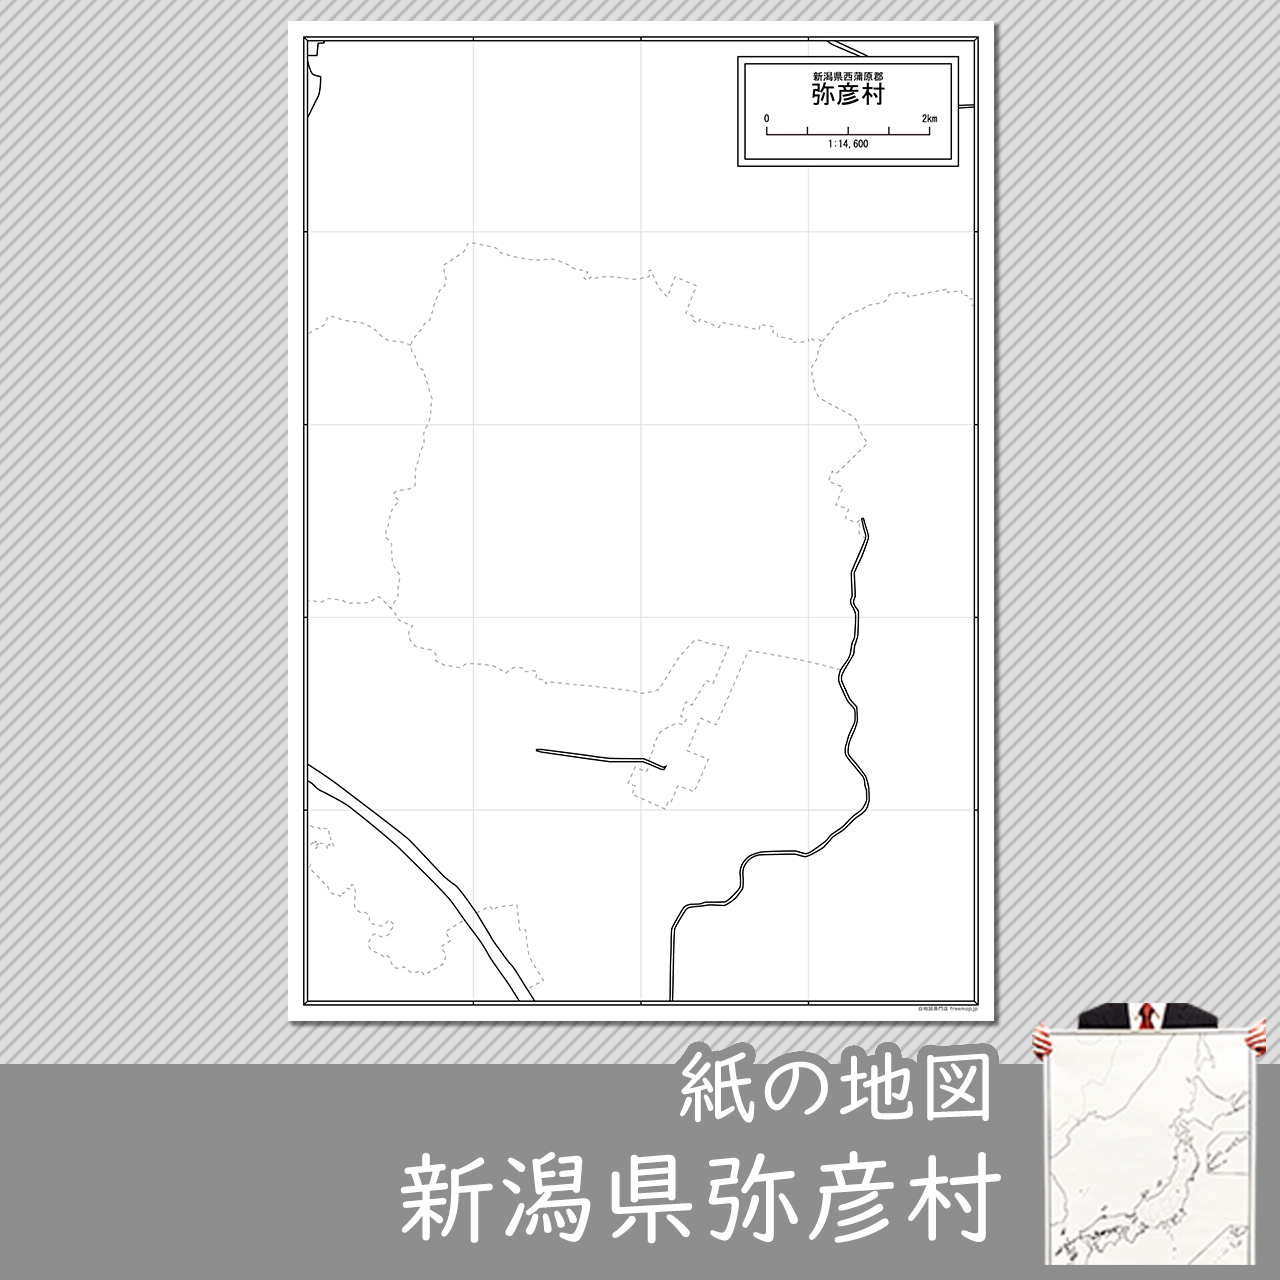 弥彦村の紙の白地図